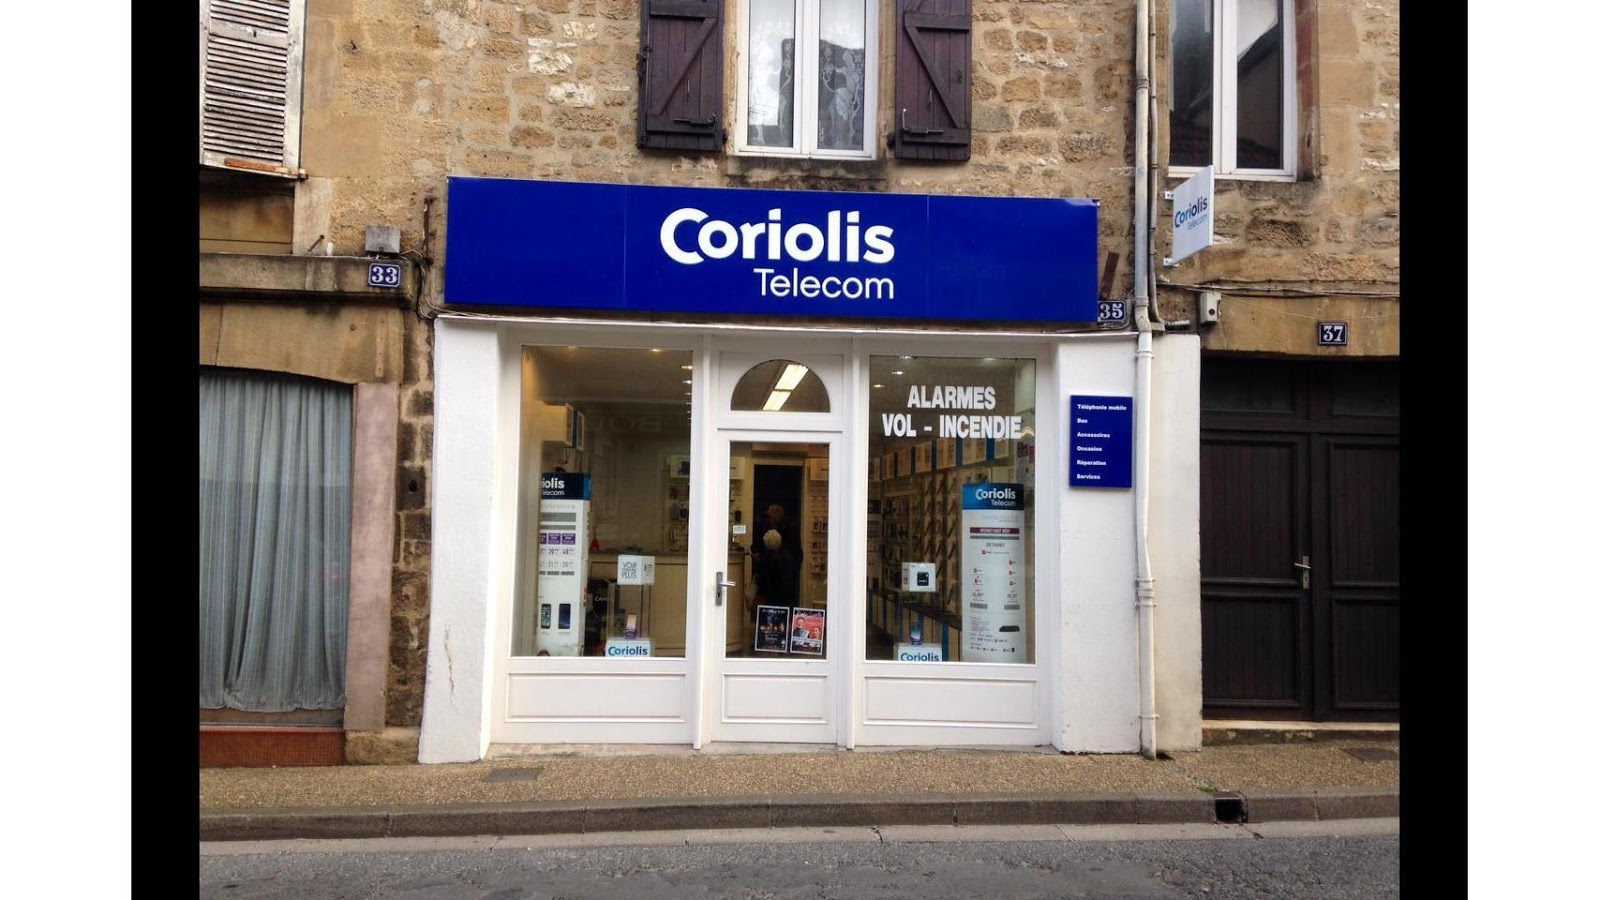 photo de la boutique de Coriolis Telecom